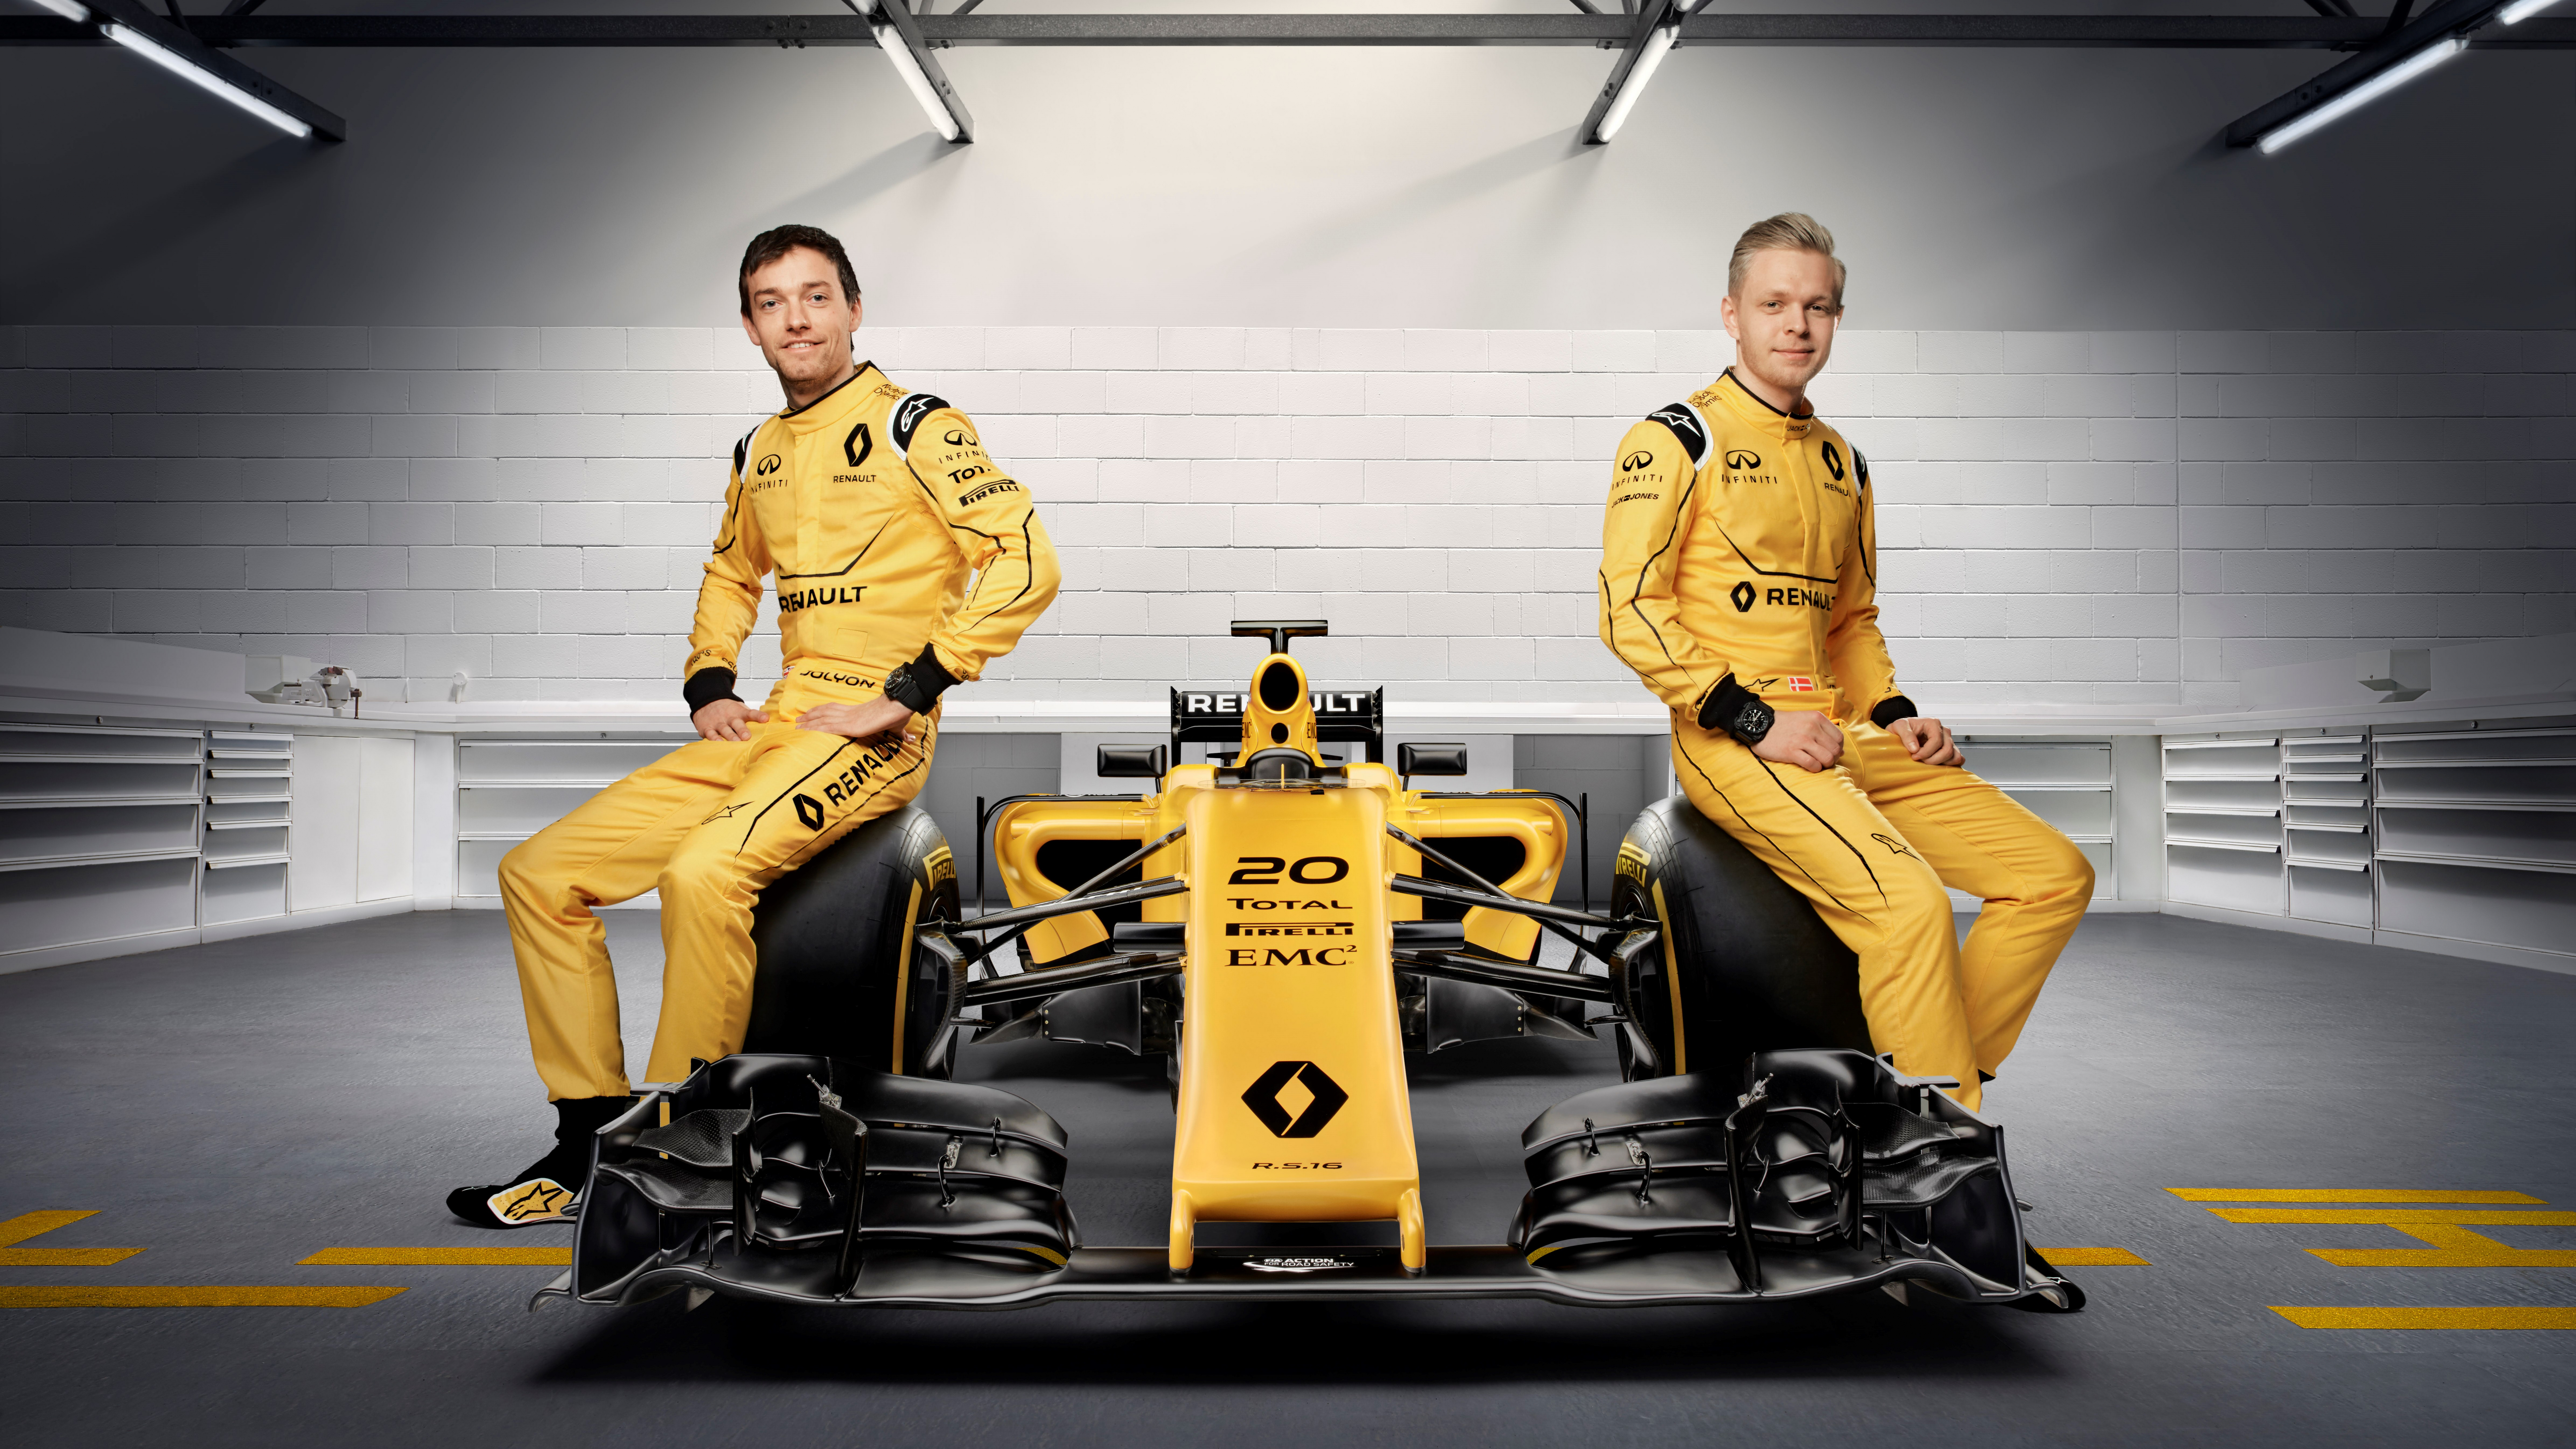 Обои 2016 Формула Один Чемпионат Мира, автогонки, Рено, желтый, команда в разрешении 7680x4320